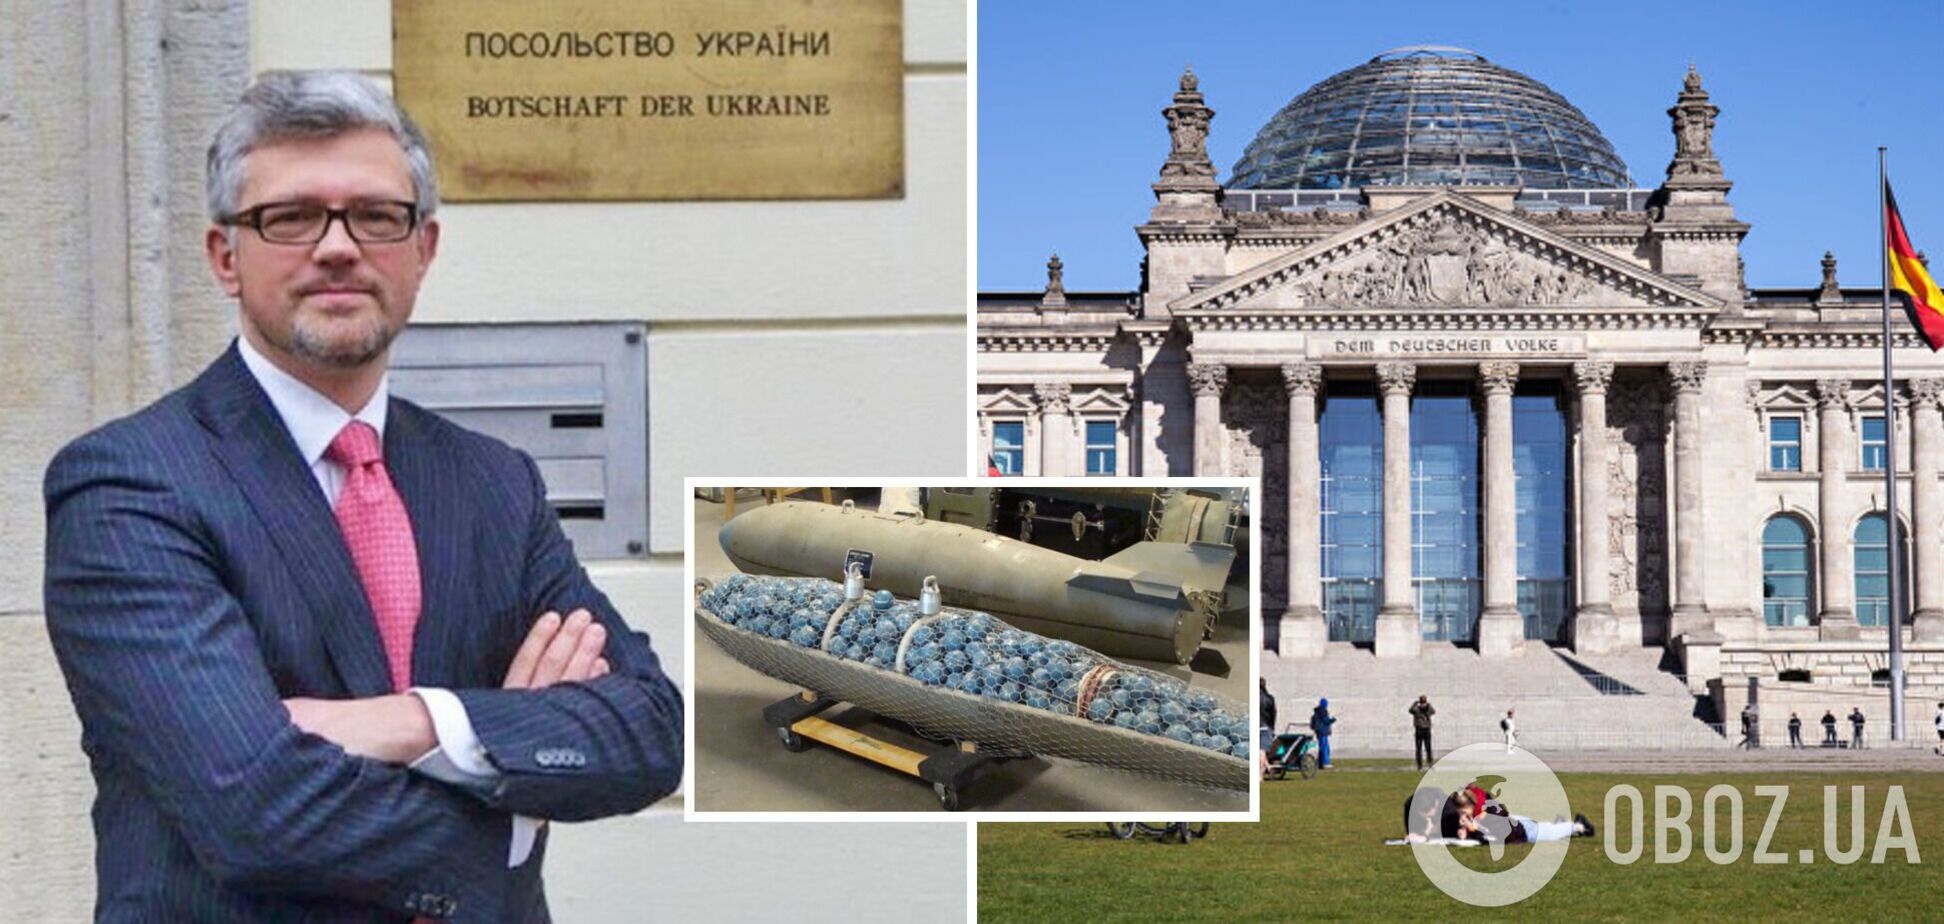 'Ідіть до біса зі своїми порадами!' Український дипломат відповів німецькому депутату на скандальну заяву